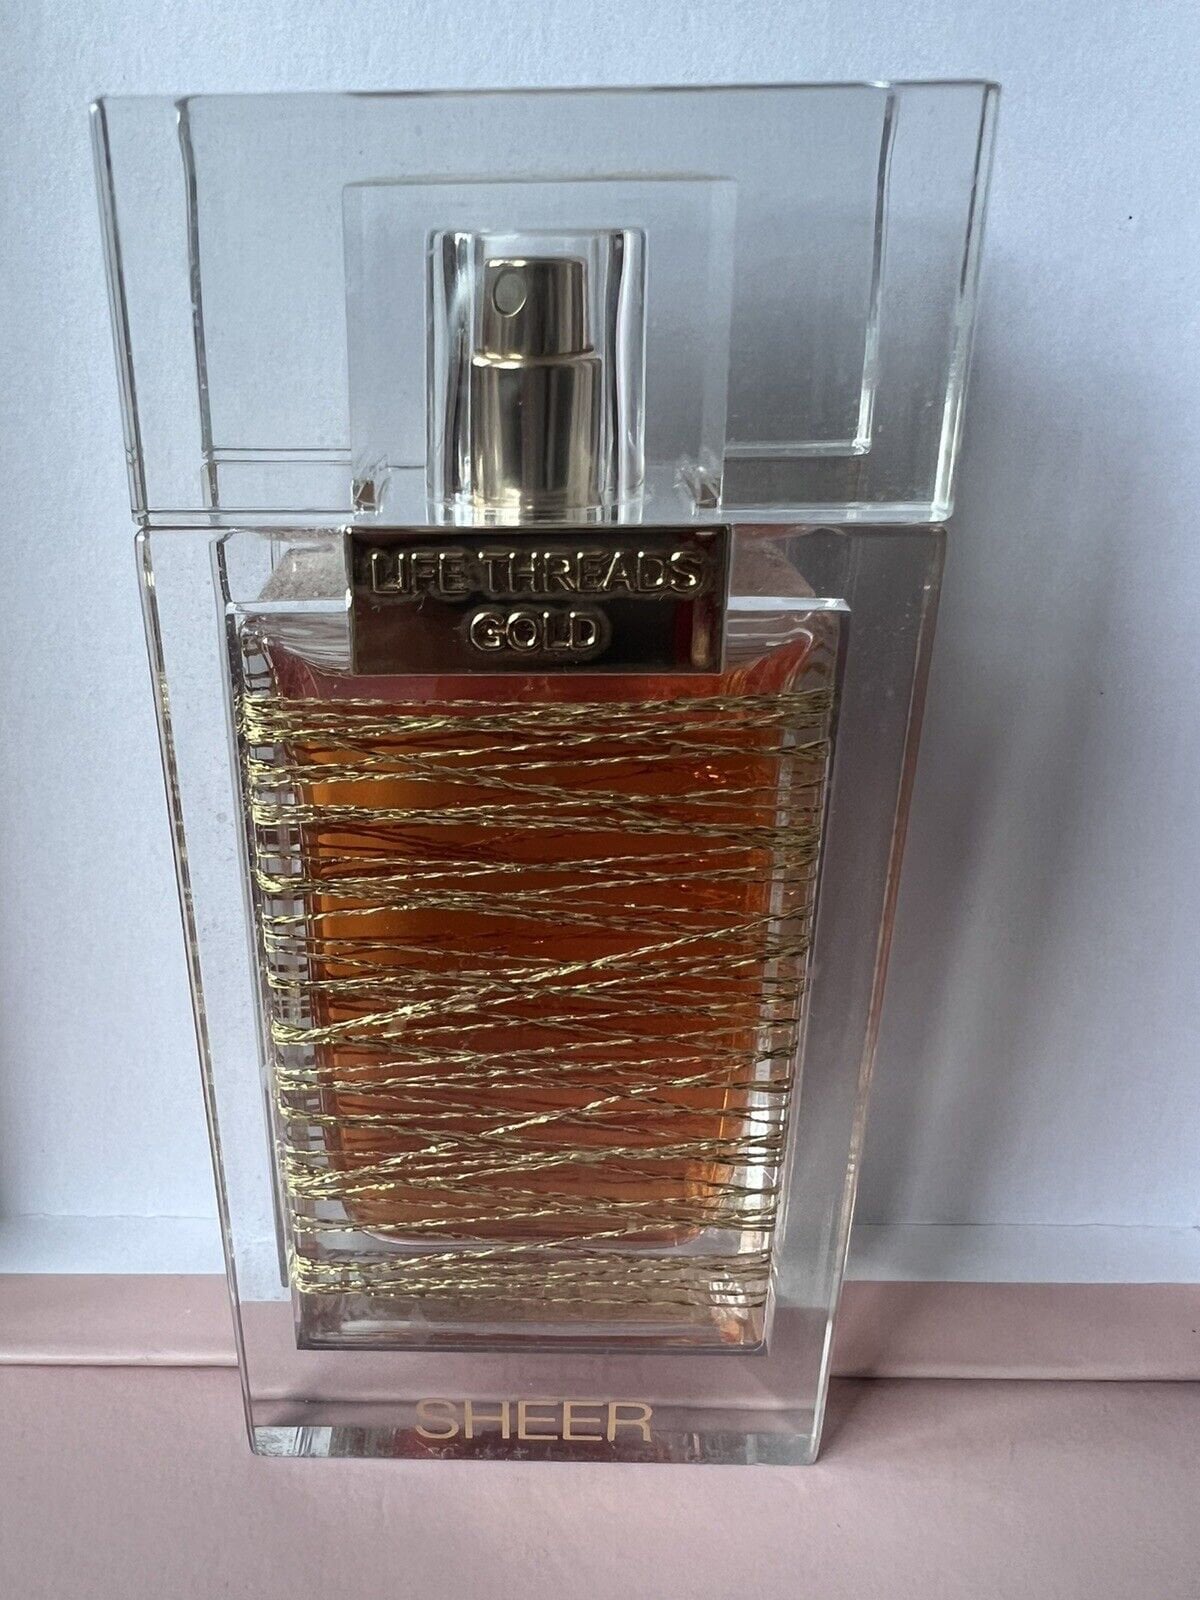 Extrem Selten La Prairie - Life Threads Gold Sheer Eau De Parfum 50 Ml Vintage, Must Have, Luxus Original Jahr 2004 von miniperfumes